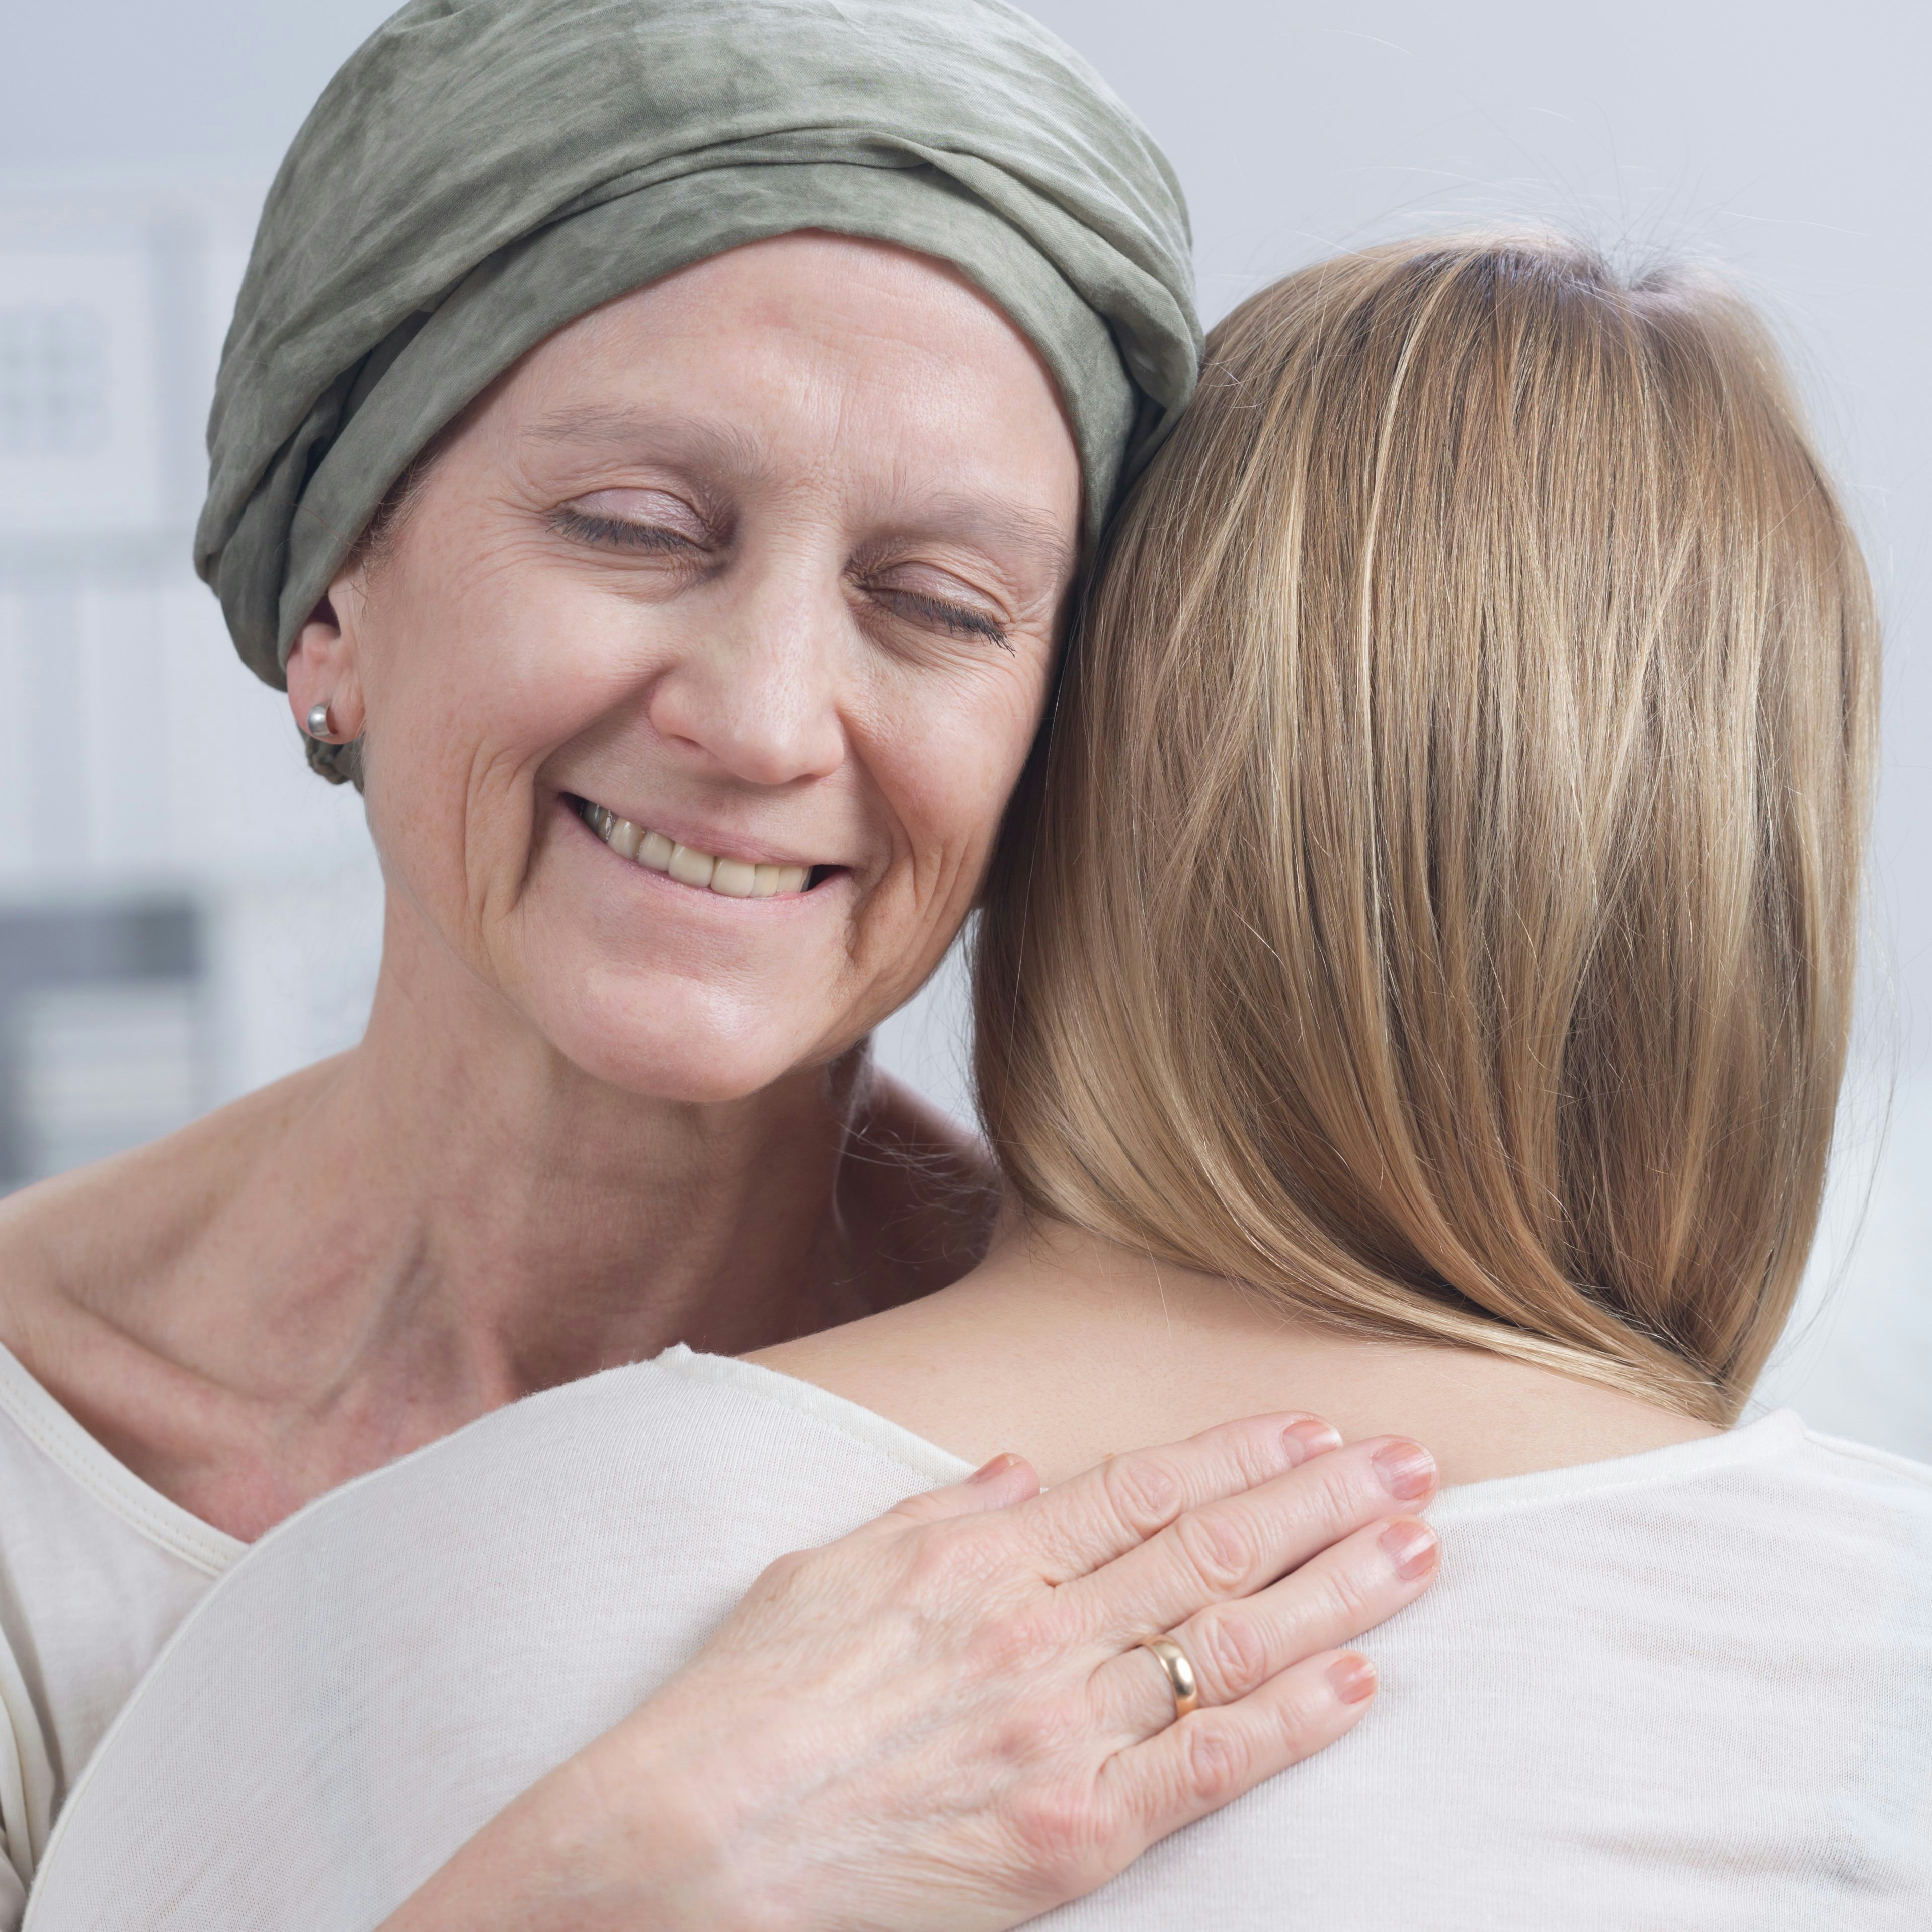 Krebstherapie im Wandel: ein Plädoyer für einen positiven Umgang mit der Krankheit